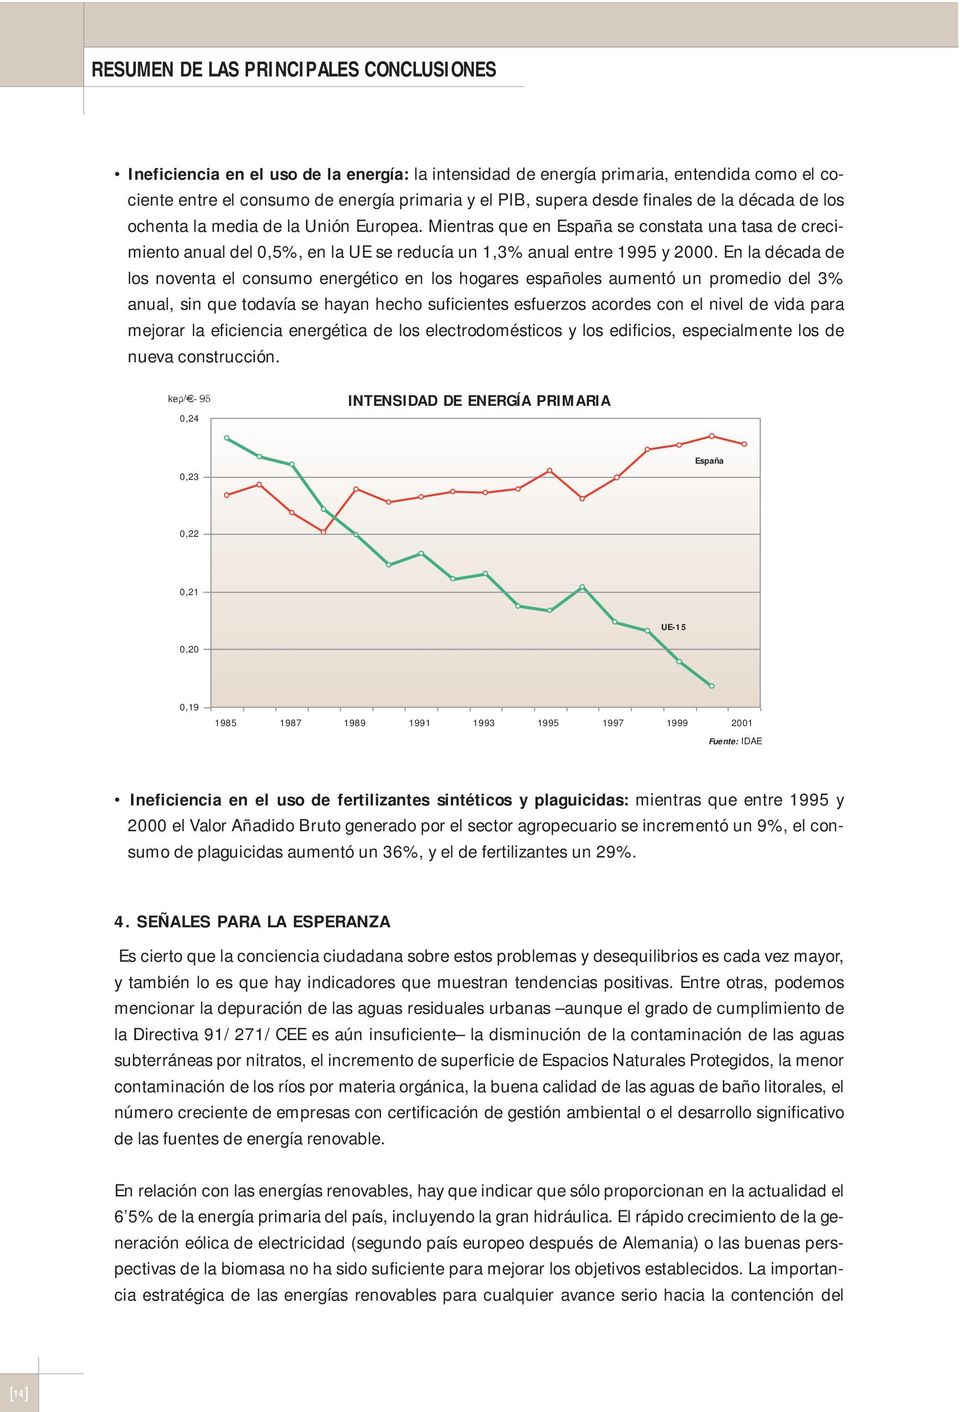 En la década de los noventa el consumo energético en los hogares españoles aumentó un promedio del 3% anual, sin que todavía se hayan hecho suficientes esfuerzos acordes con el nivel de vida para